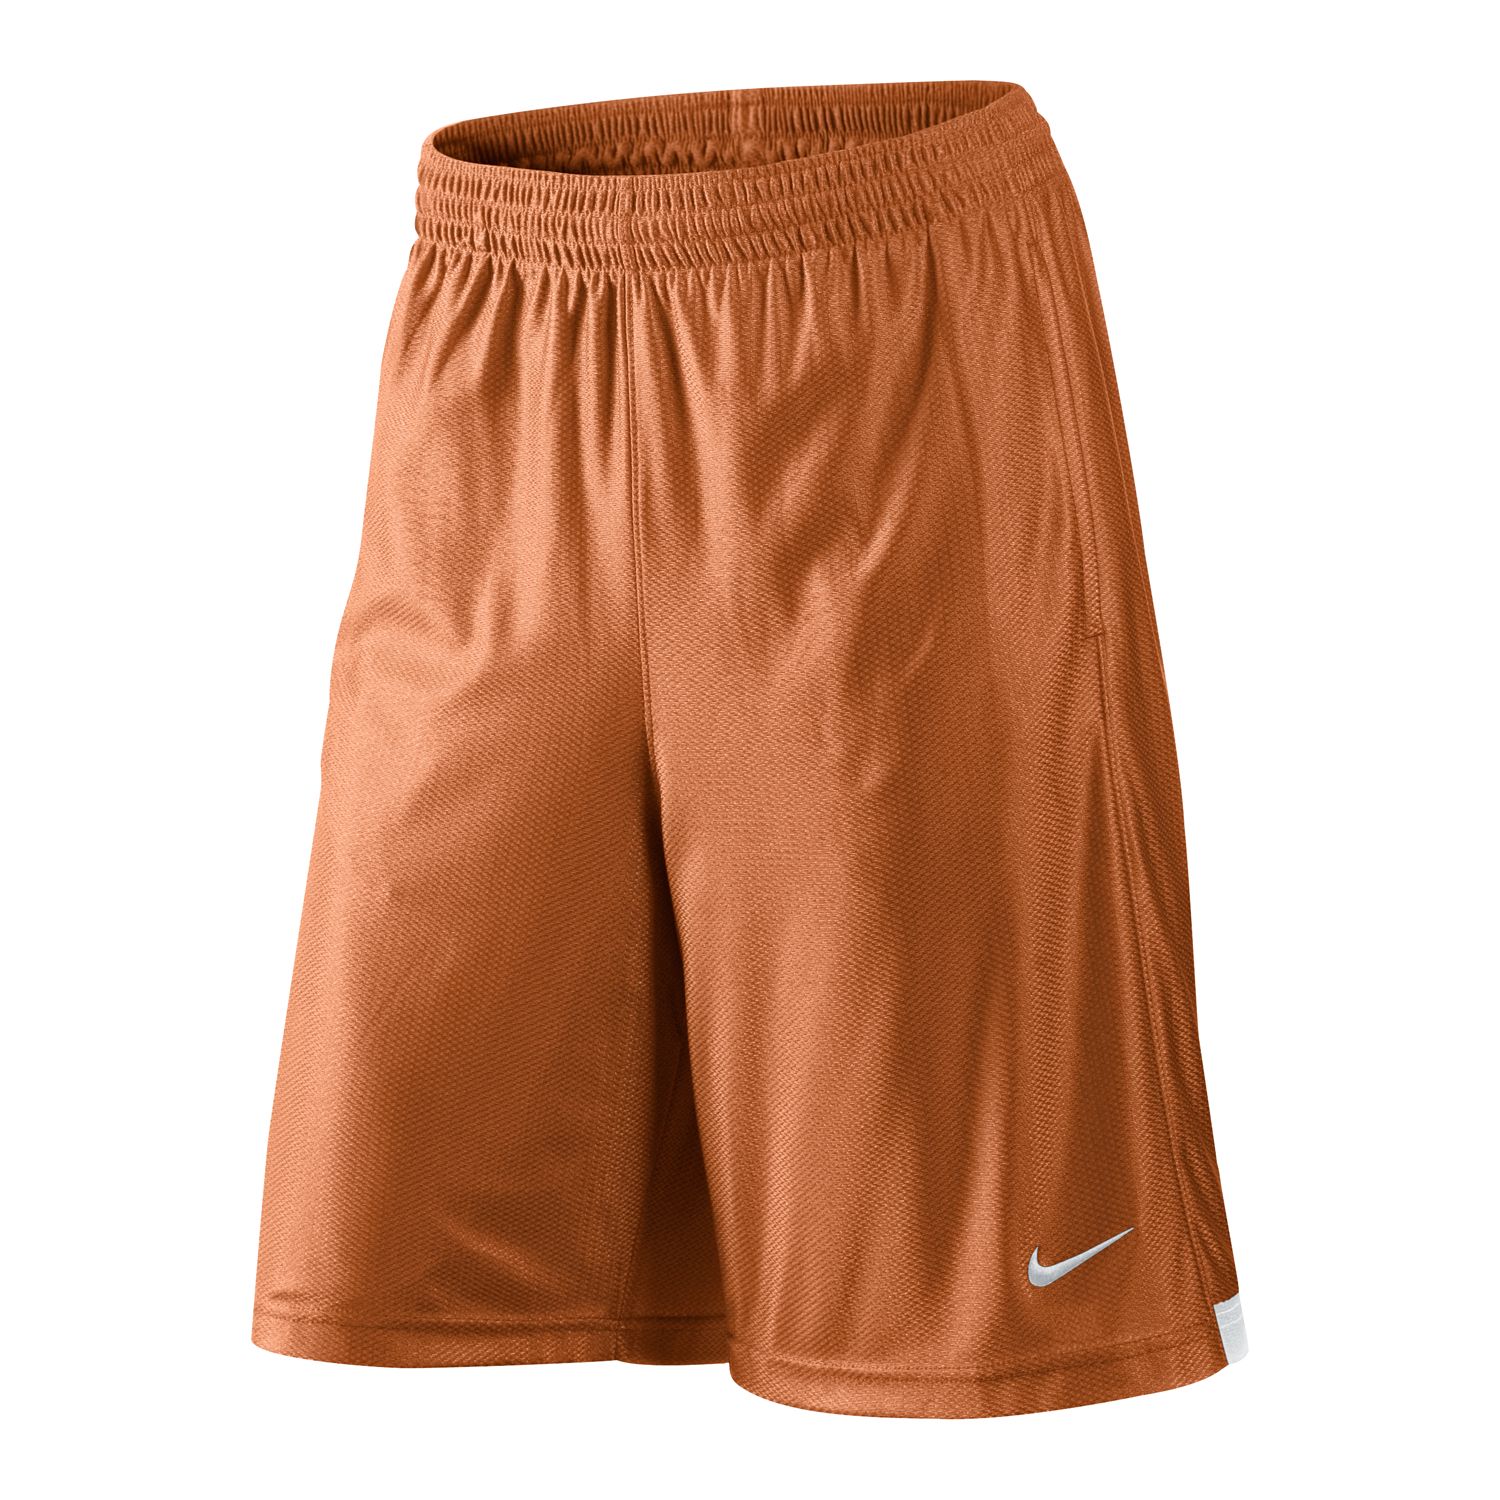 Nike Zone Basketball Shorts